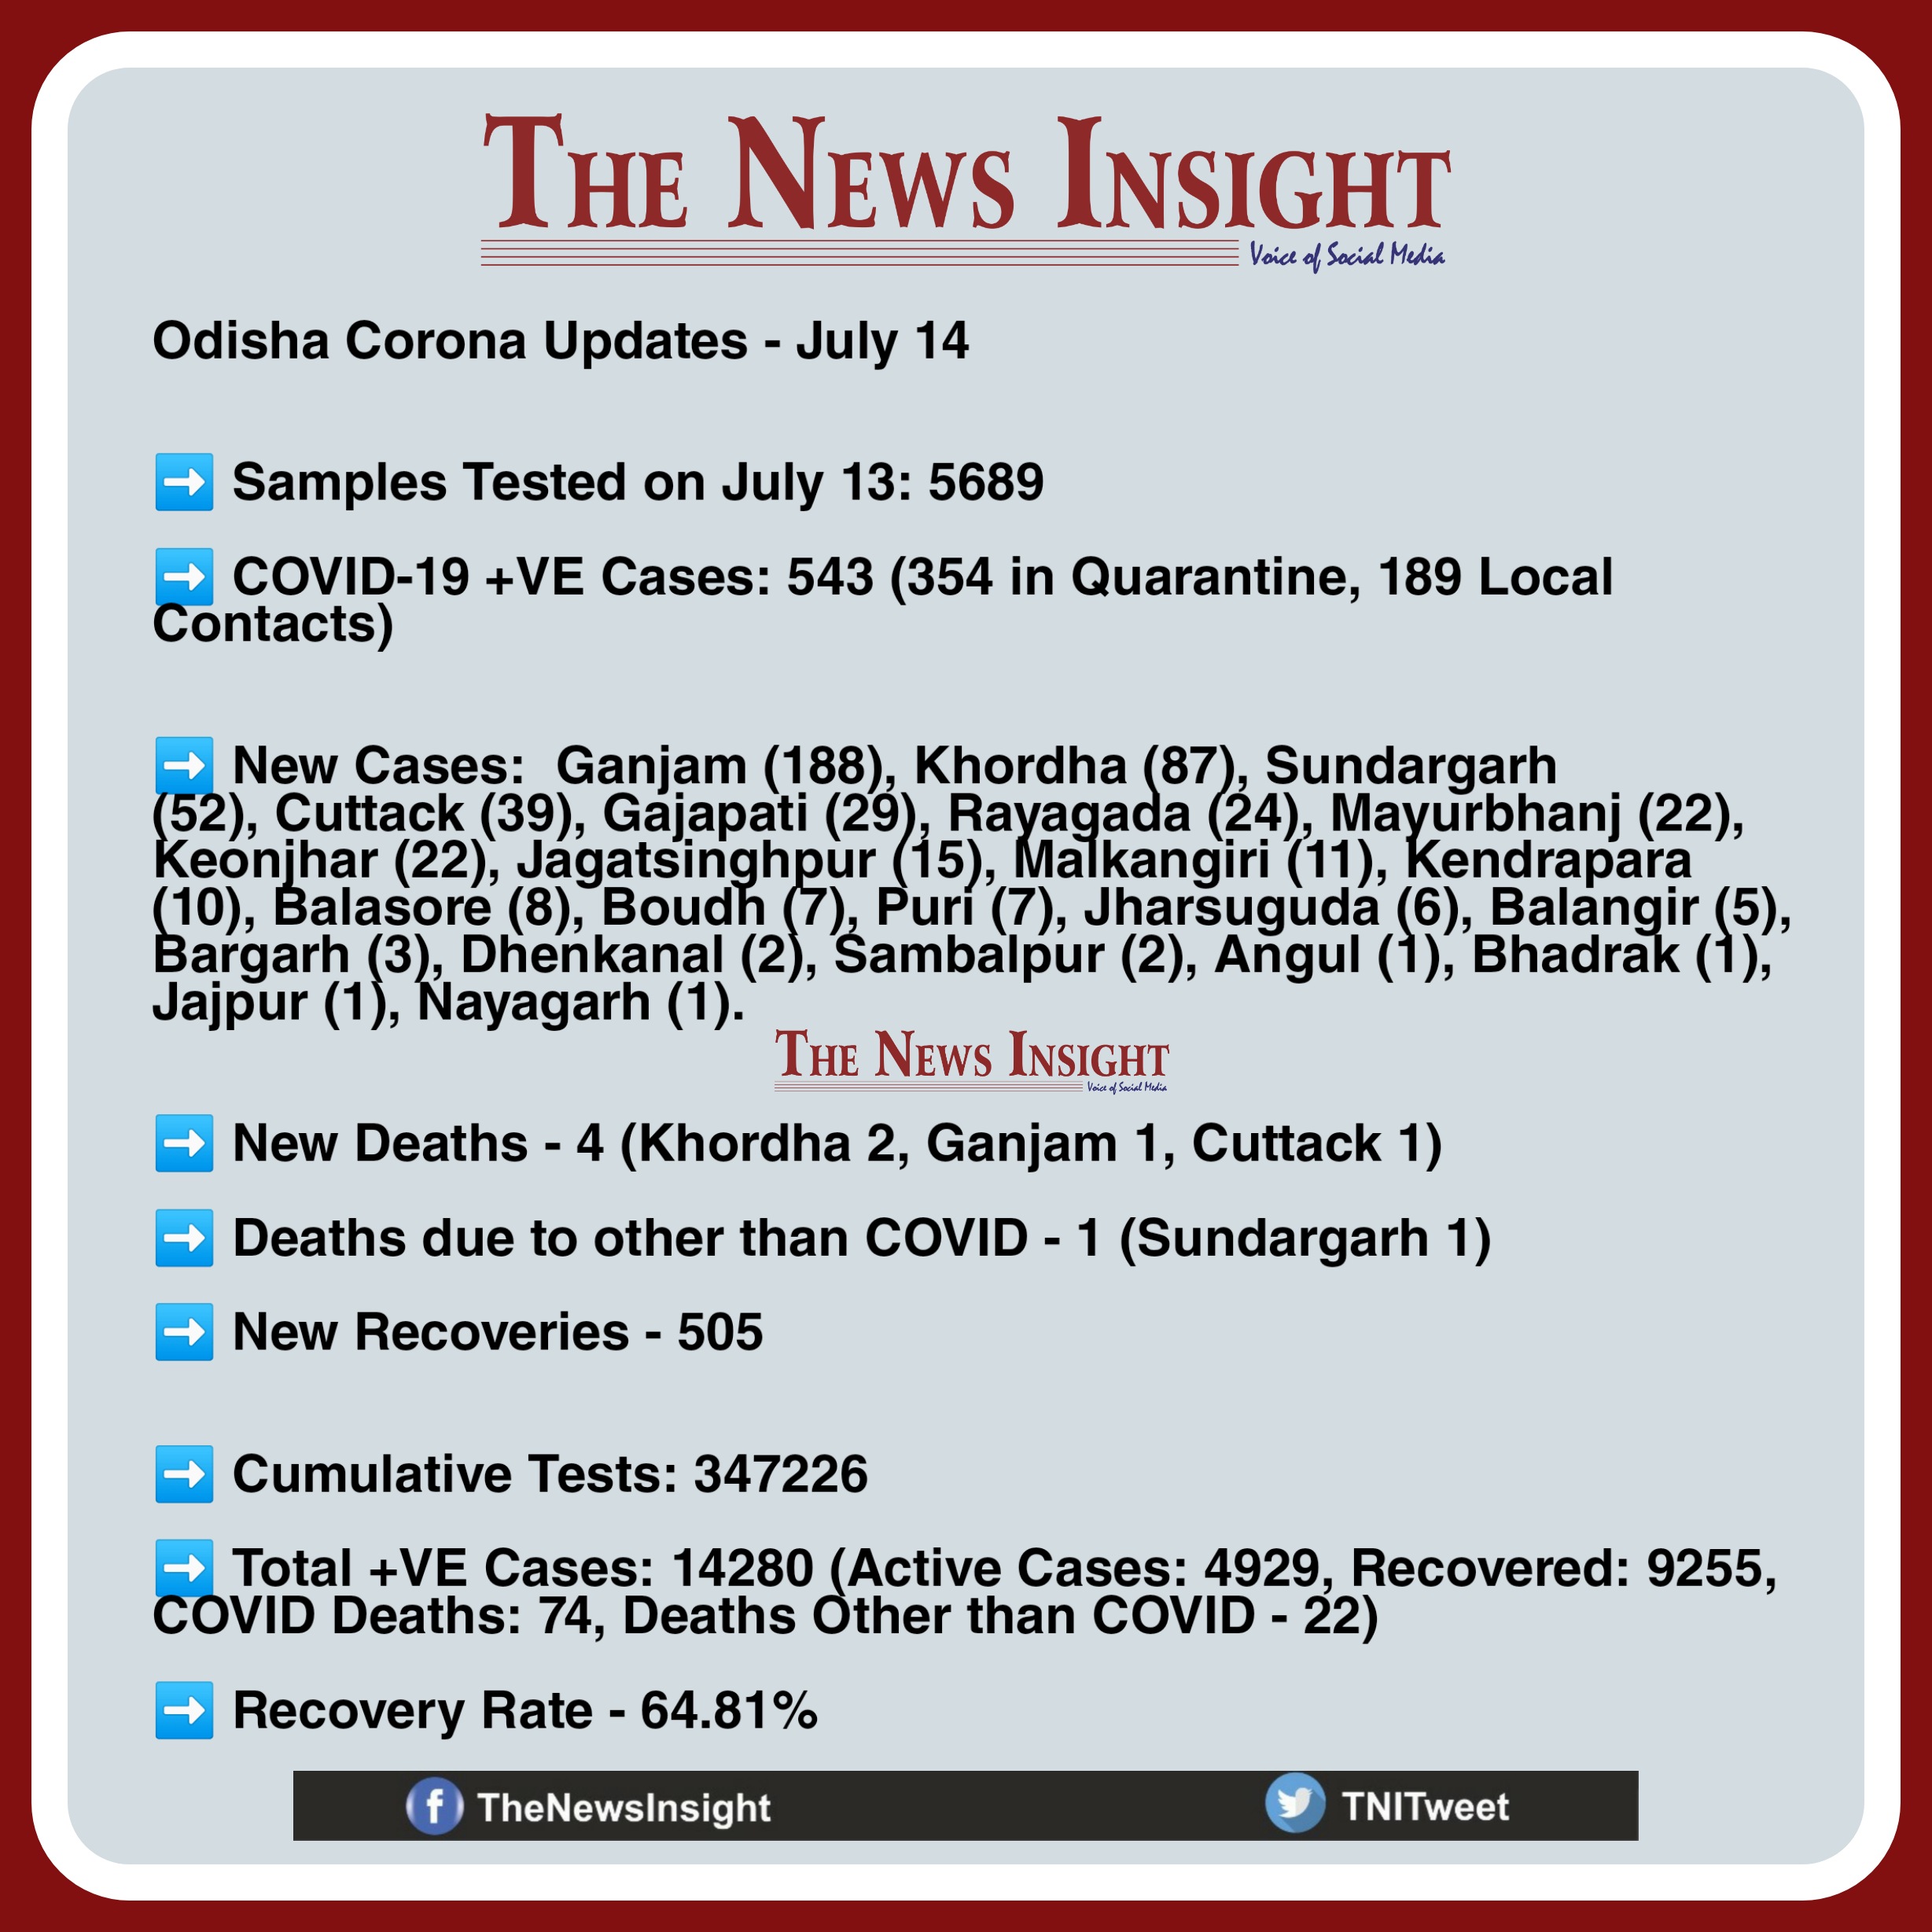 Odisha Corona Updates July 14